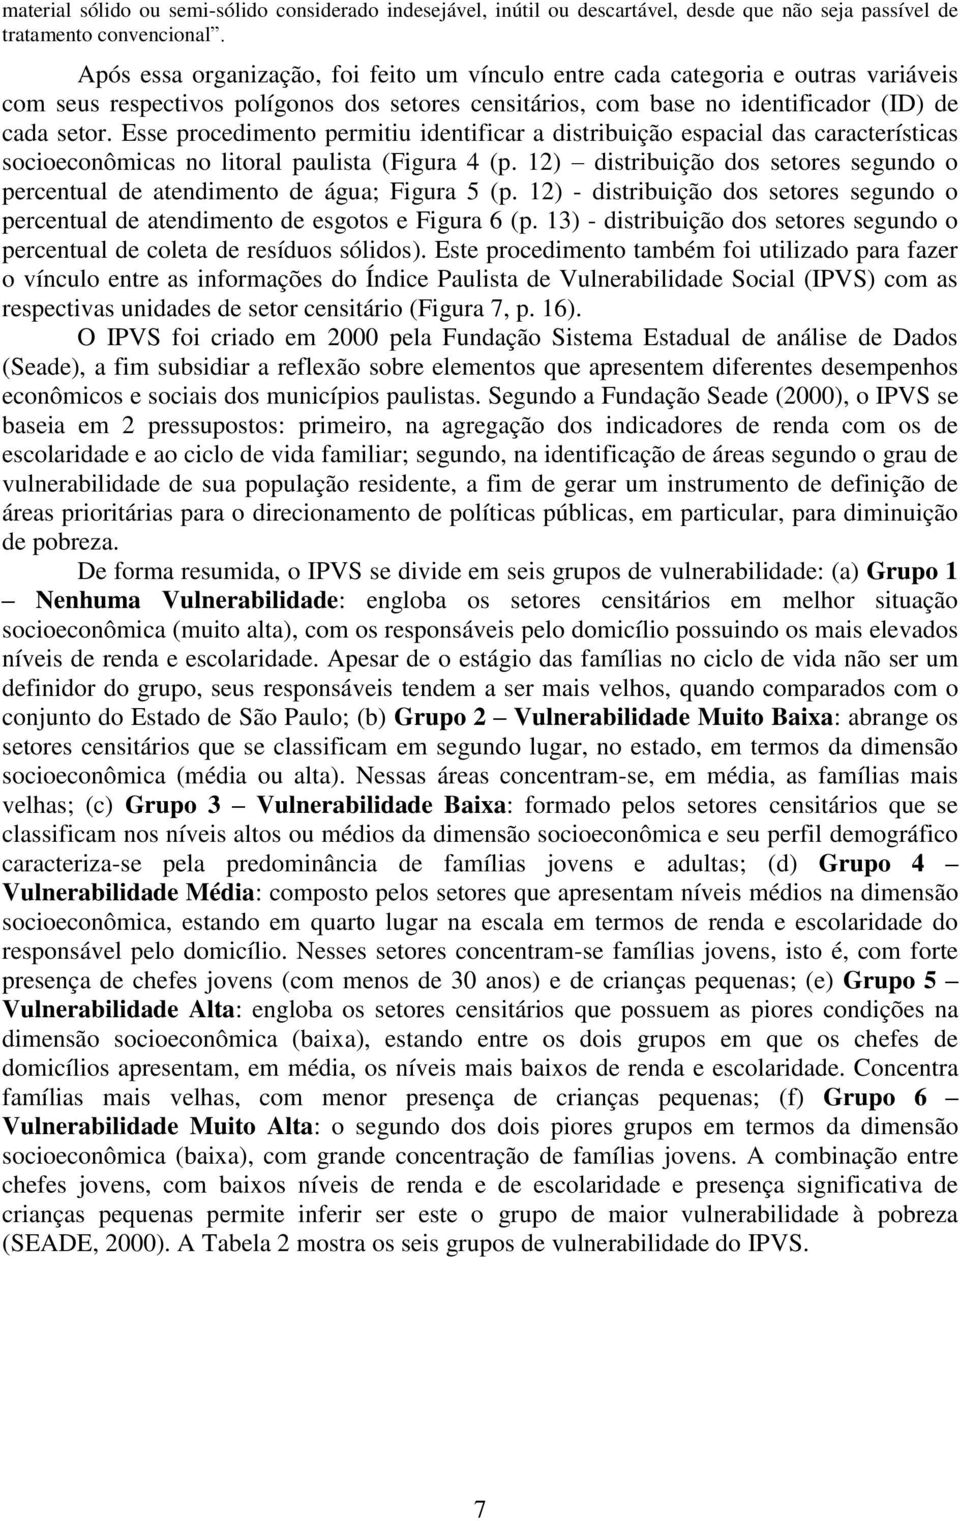 Esse procedimento permitiu identificar a distribuição espacial das características socioeconômicas no litoral paulista (Figura 4 (p.